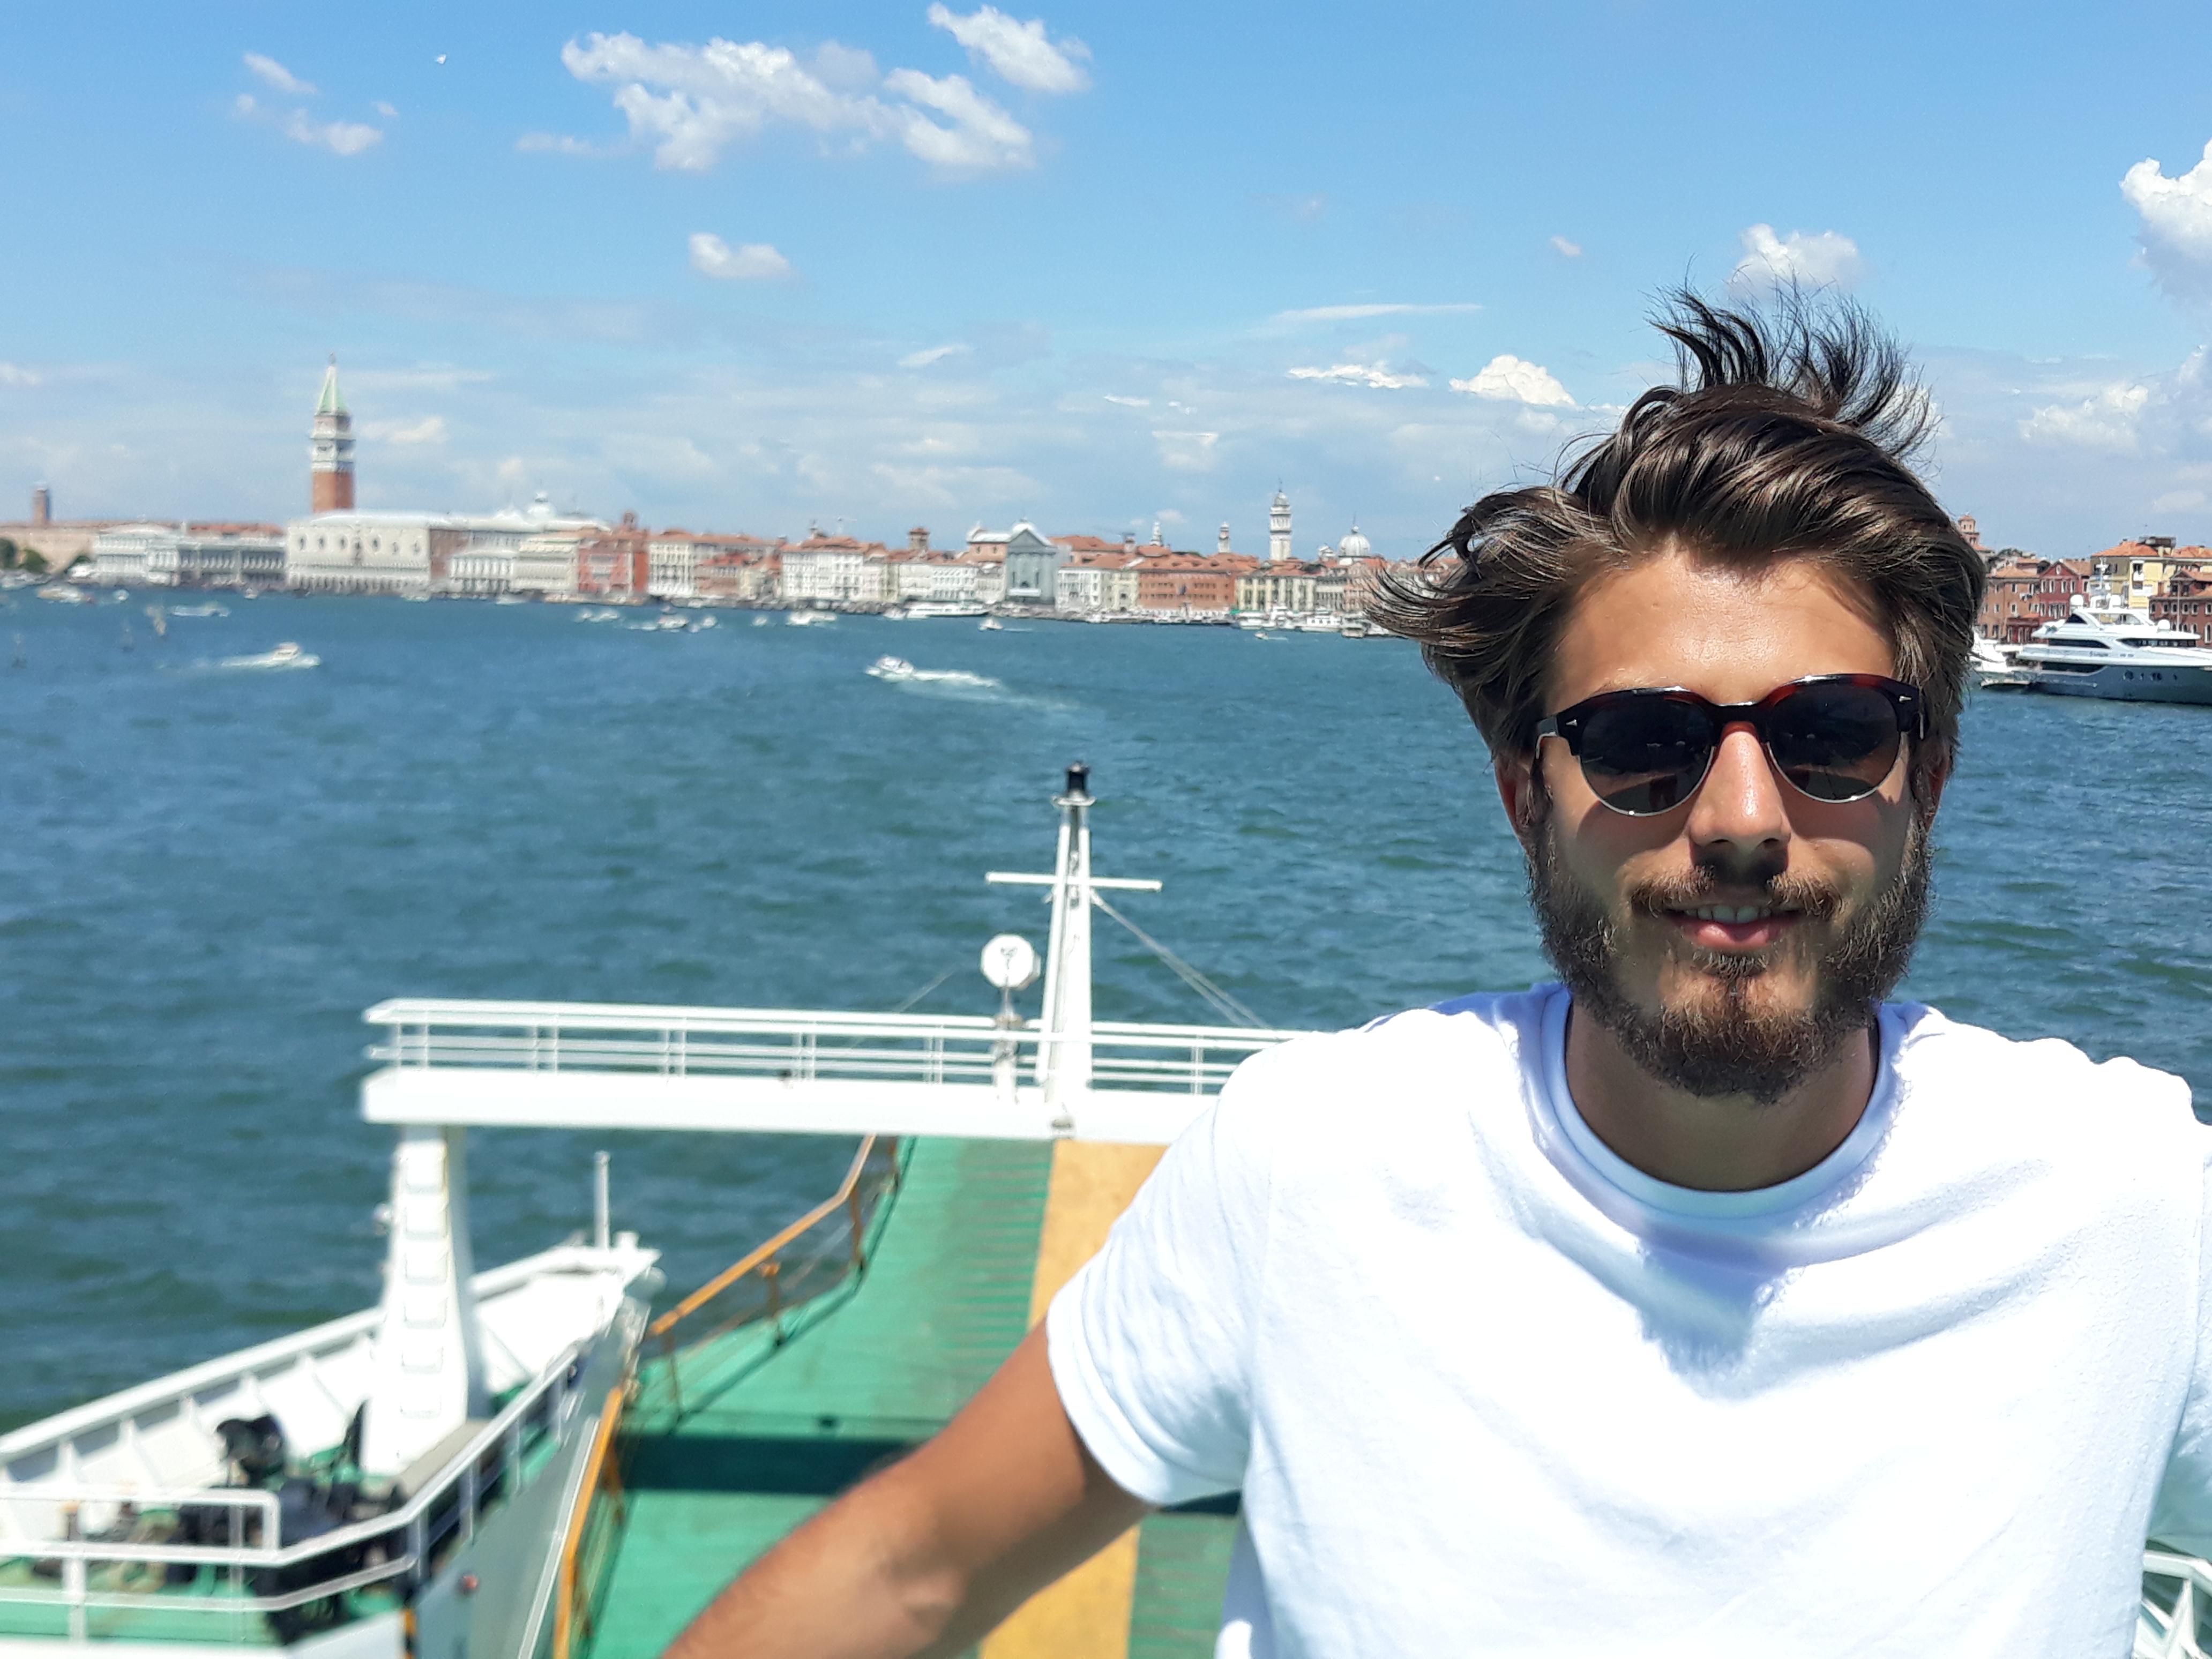 Fantasztikus kalandok az apa-fia nyaraláson: ez történt Gergely Róbertékkel  Olaszországban - Blikk